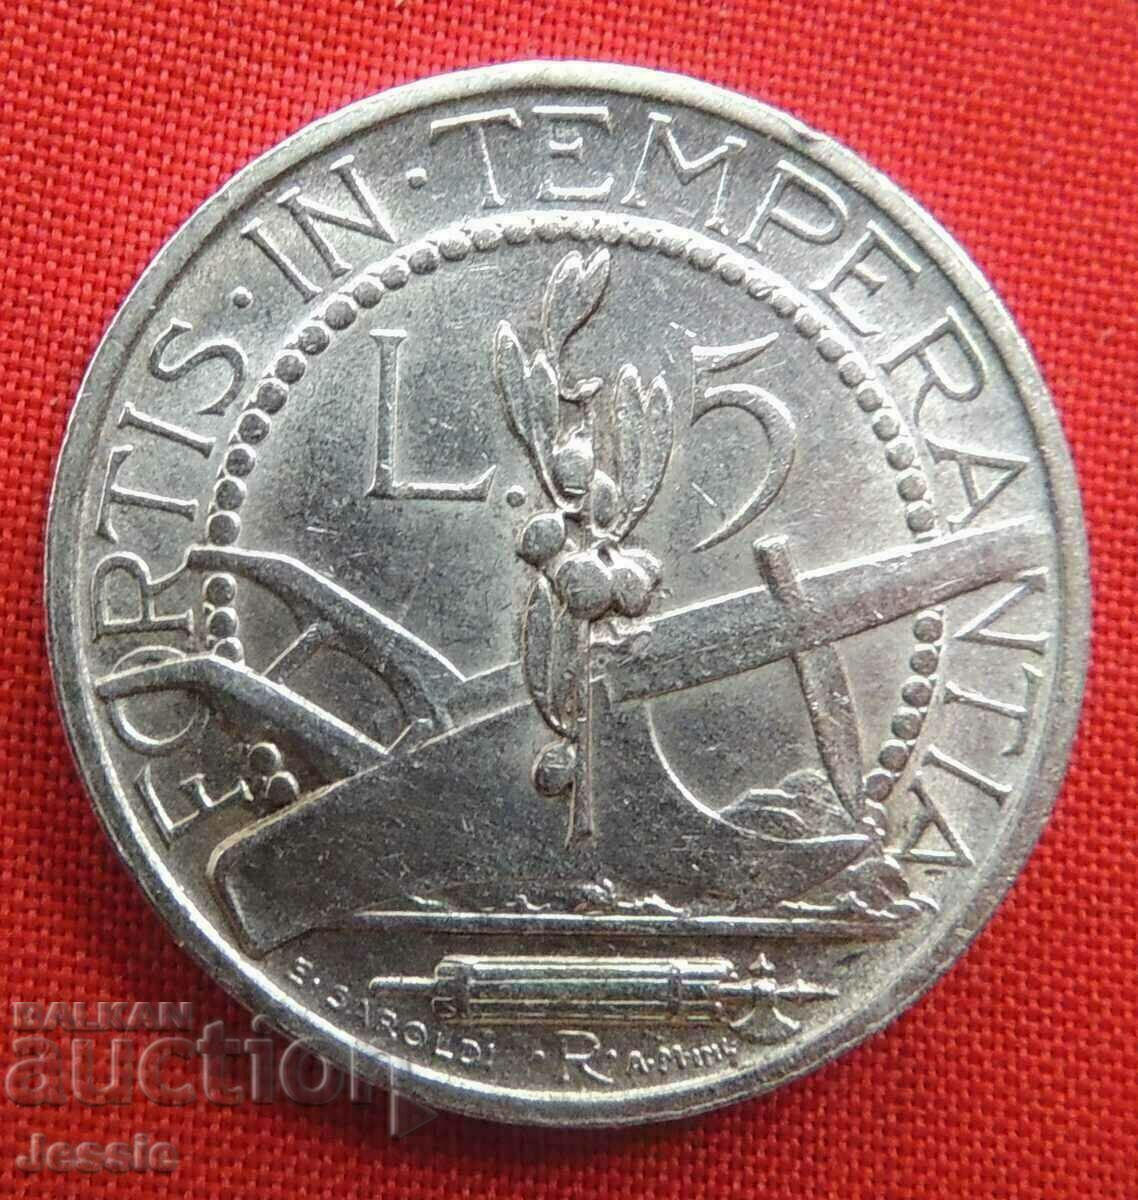 5 Pounds 1936 R San Marino Silver